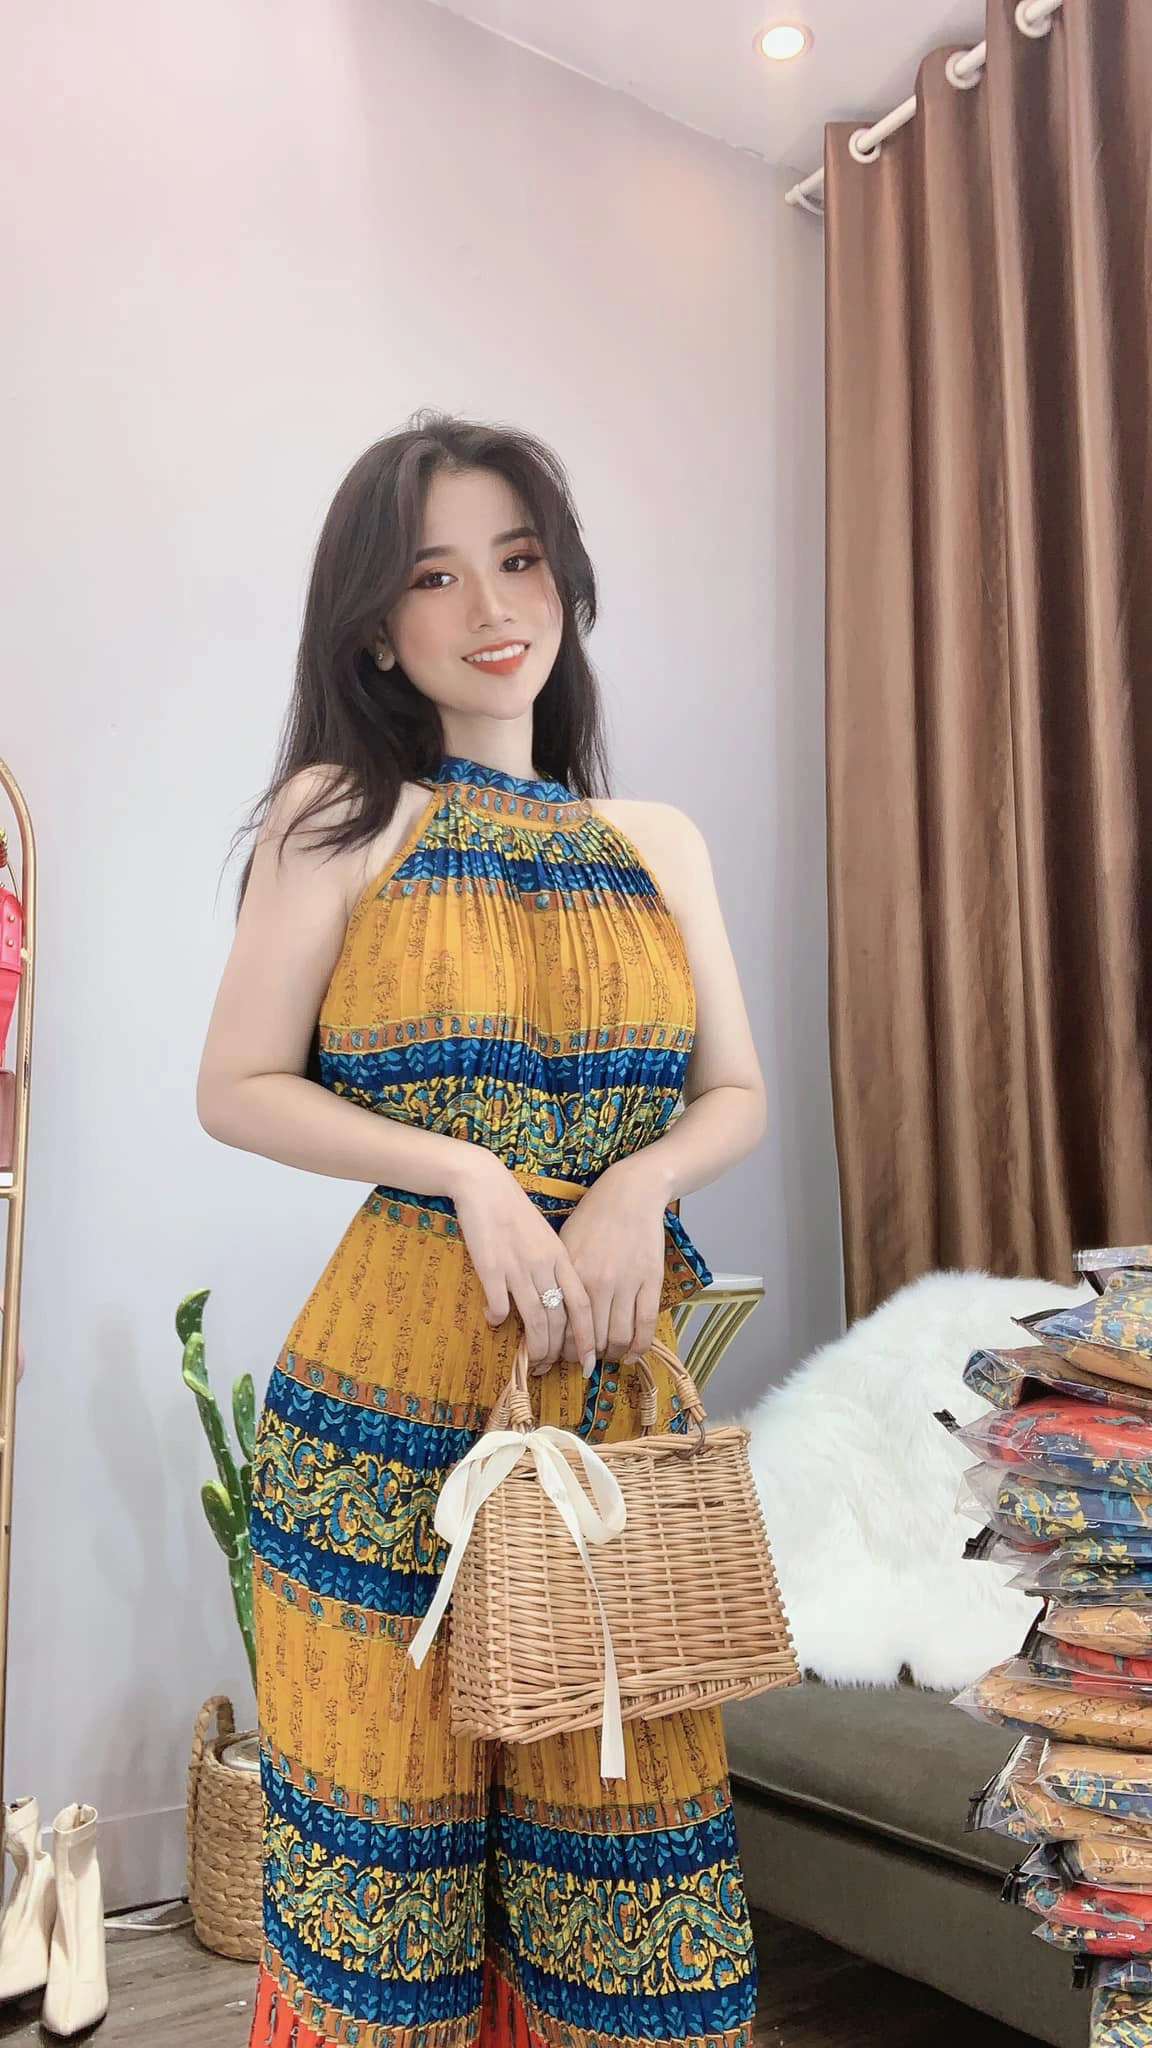 Cô chủ trẻ Thảo Lê và quá trình áp dụng live-stream để đáp ứng nhu cầu mua sắm thời trang online của khách hàng - Ảnh 2.